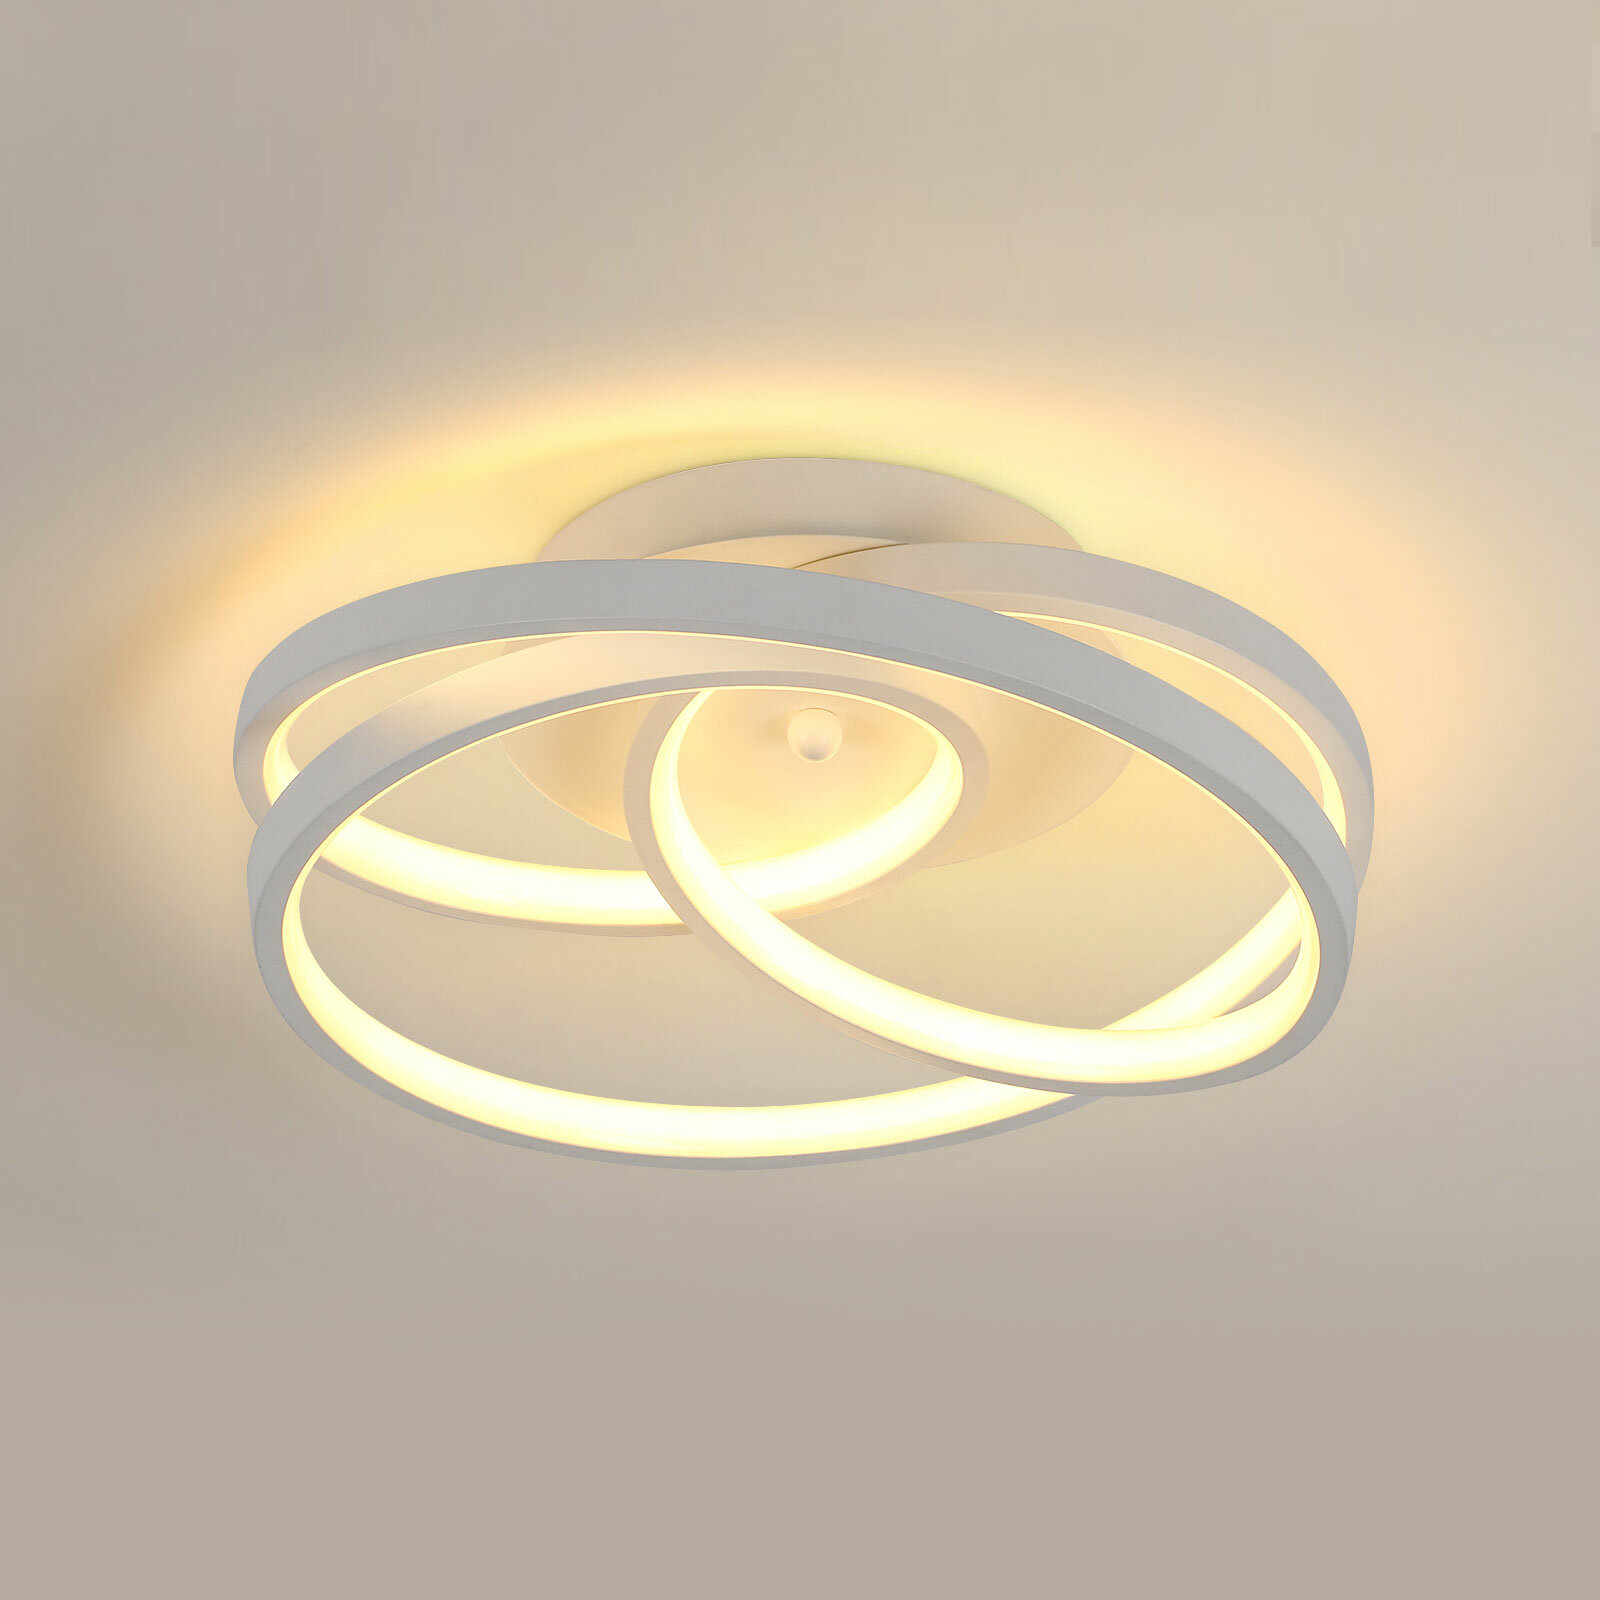 Потолочный светильник, DAXGD, DG308973, цвет: белый, теплый белый свет